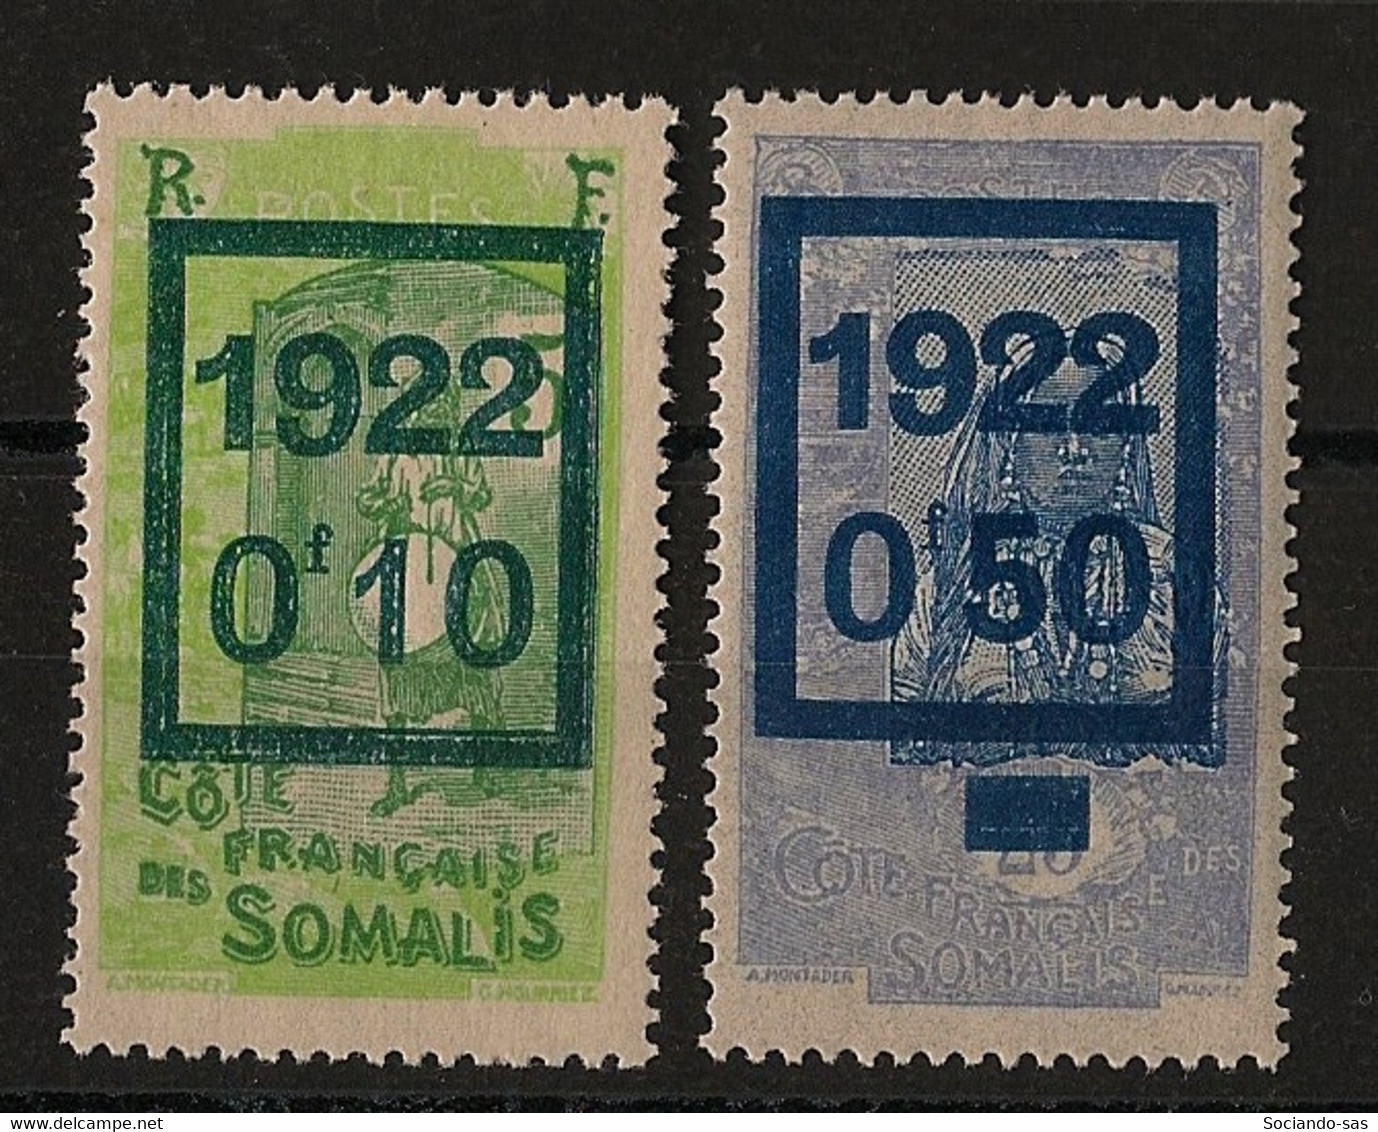 COTE DES SOMALIS - 1922 - N°YT. 101 à 102 - Série Complète - Neuf * / MH VF - Neufs